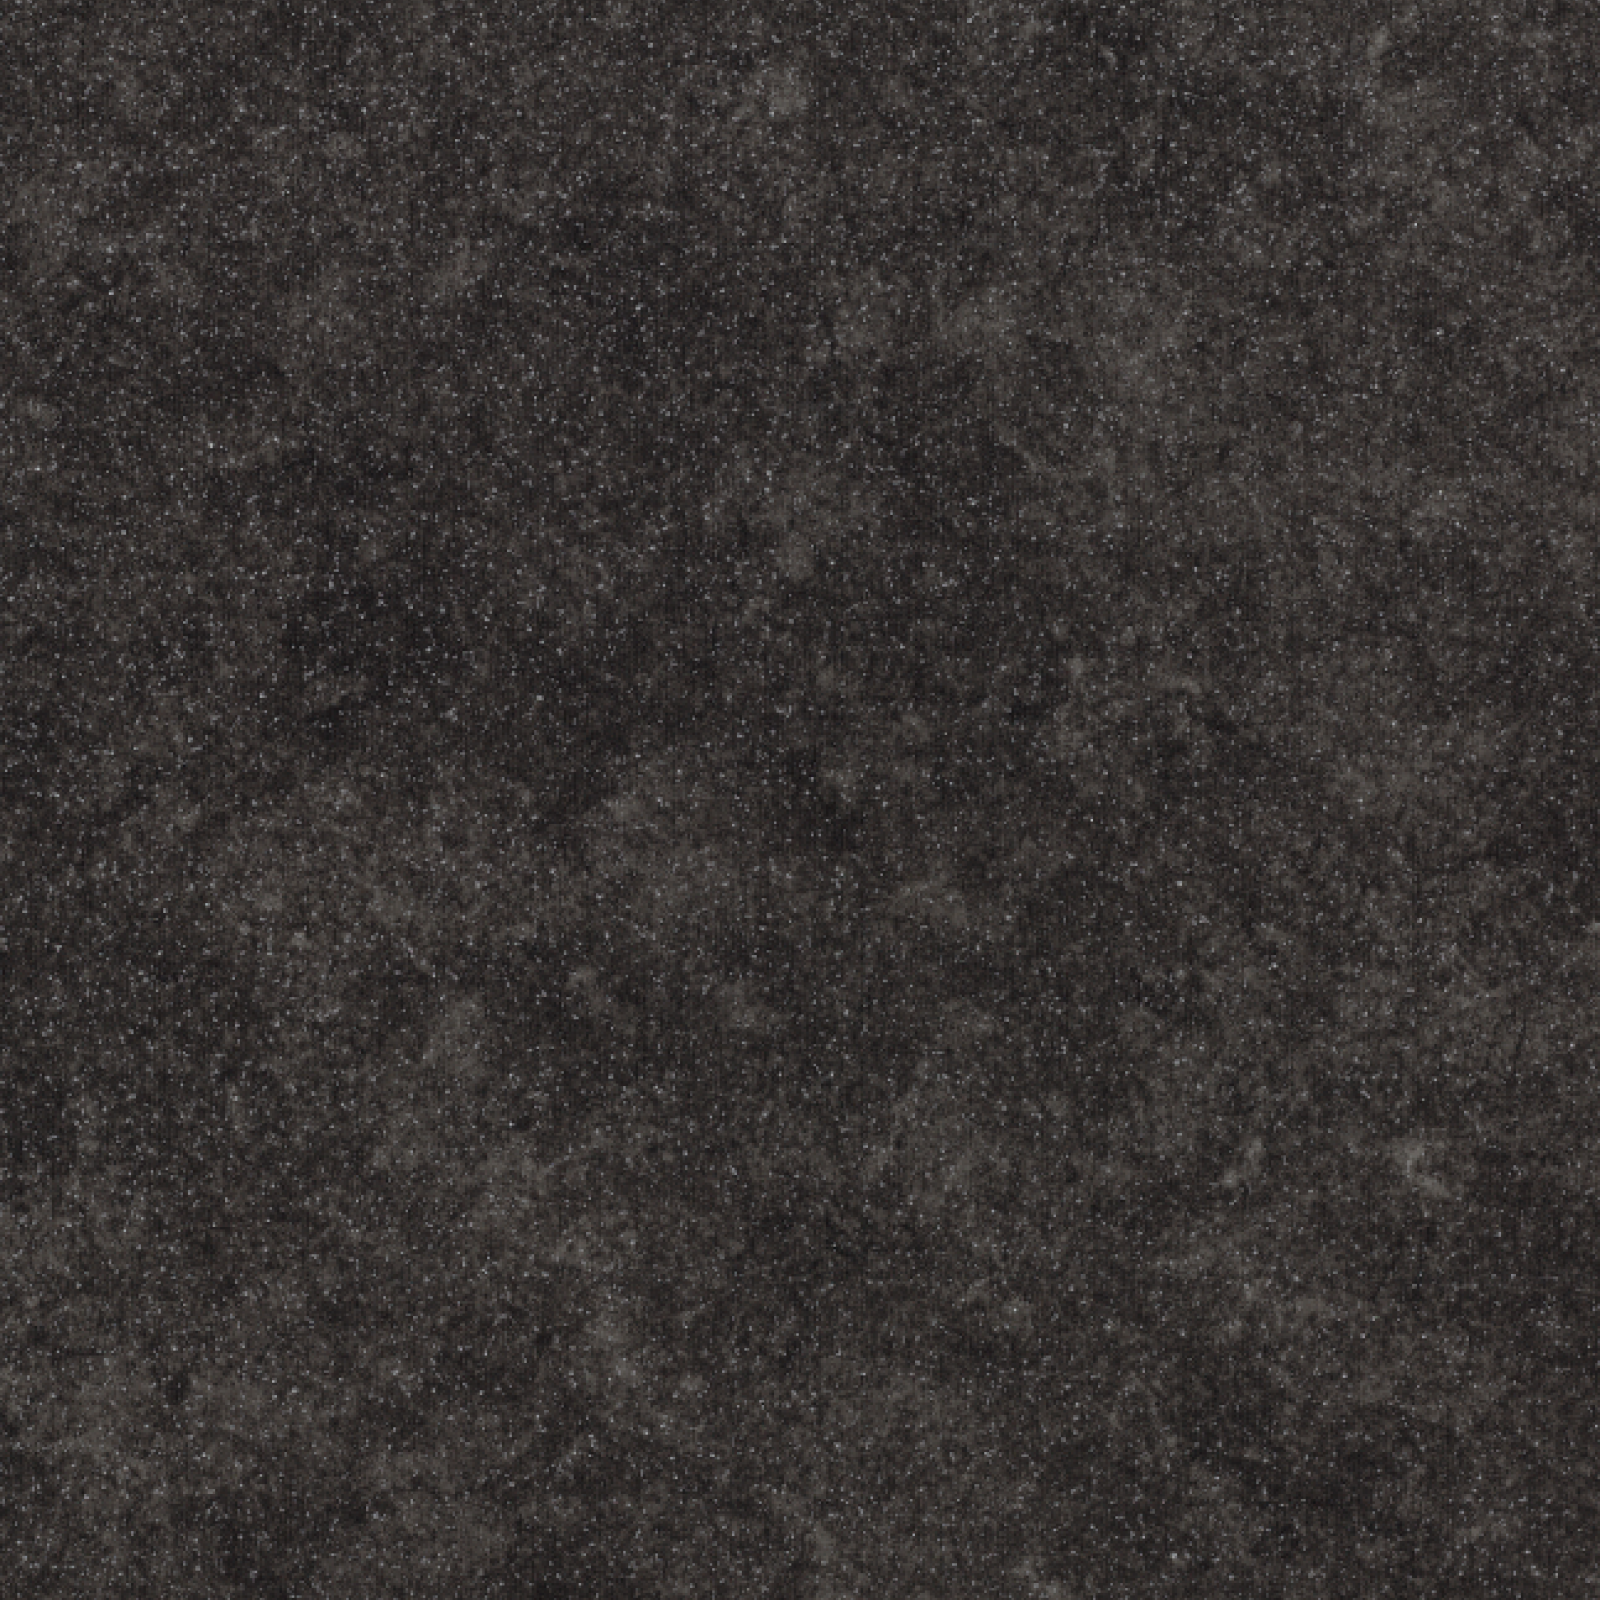 Vzor - 17172 black concrete